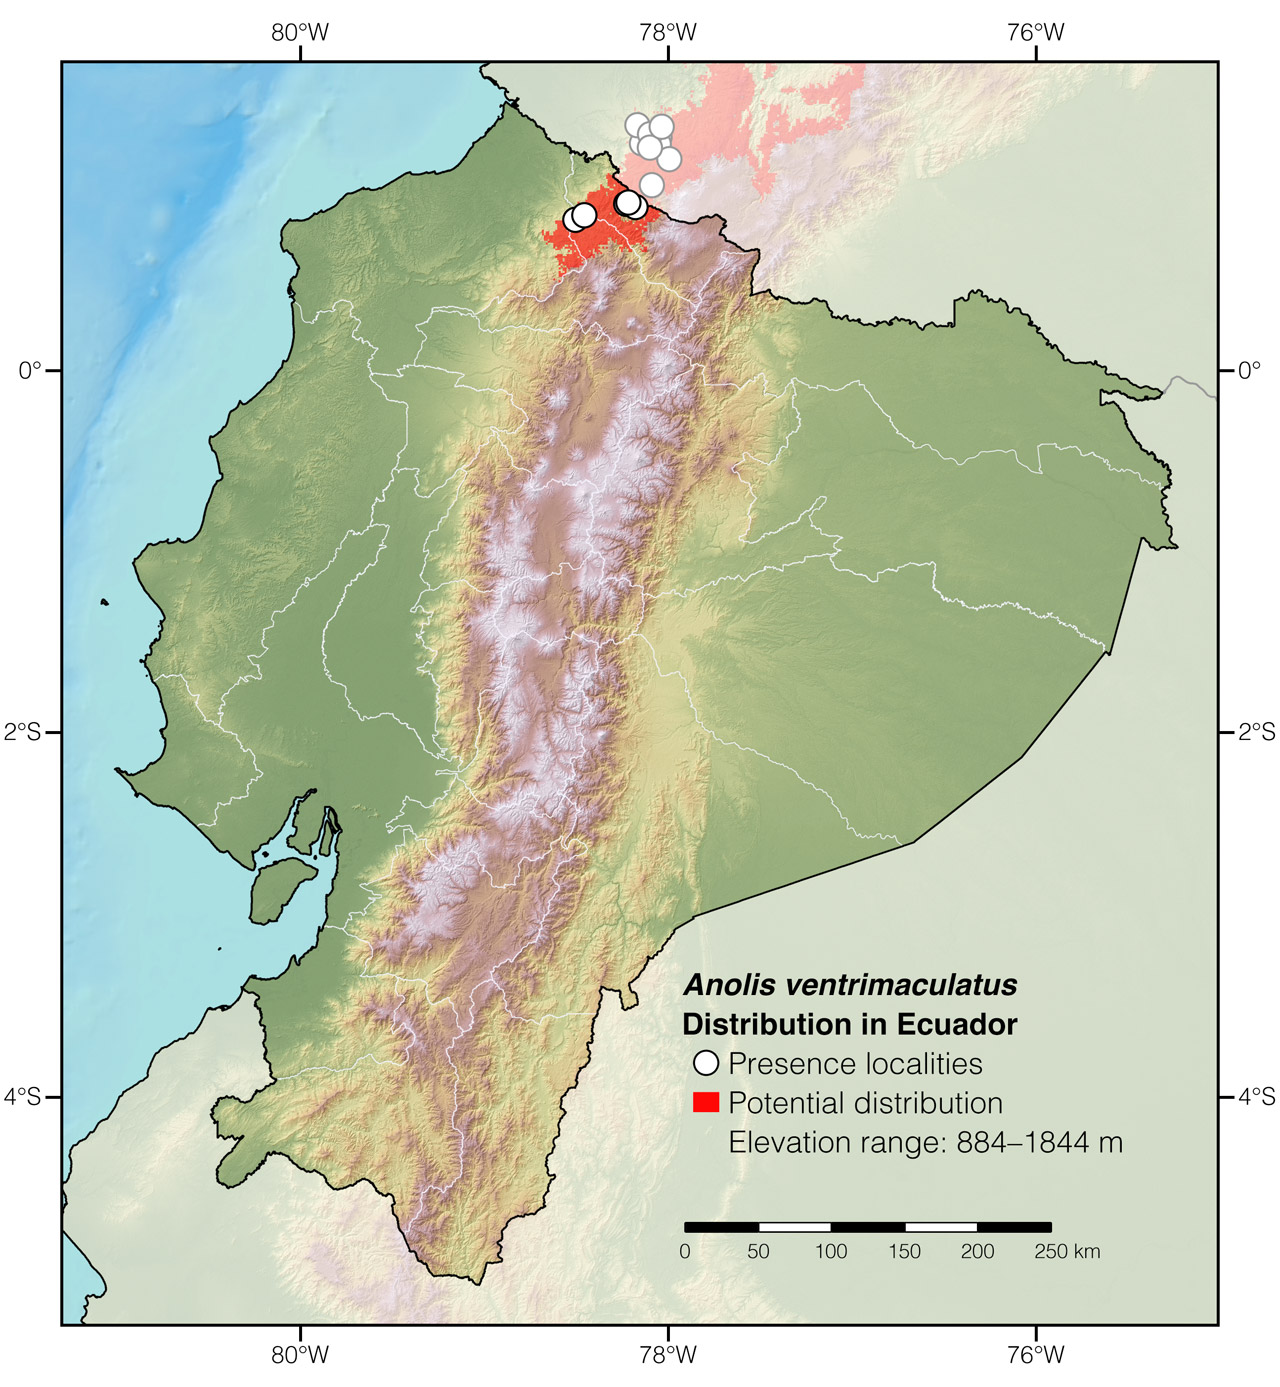 Distribution of Anolis ventrimaculatus in Ecuador